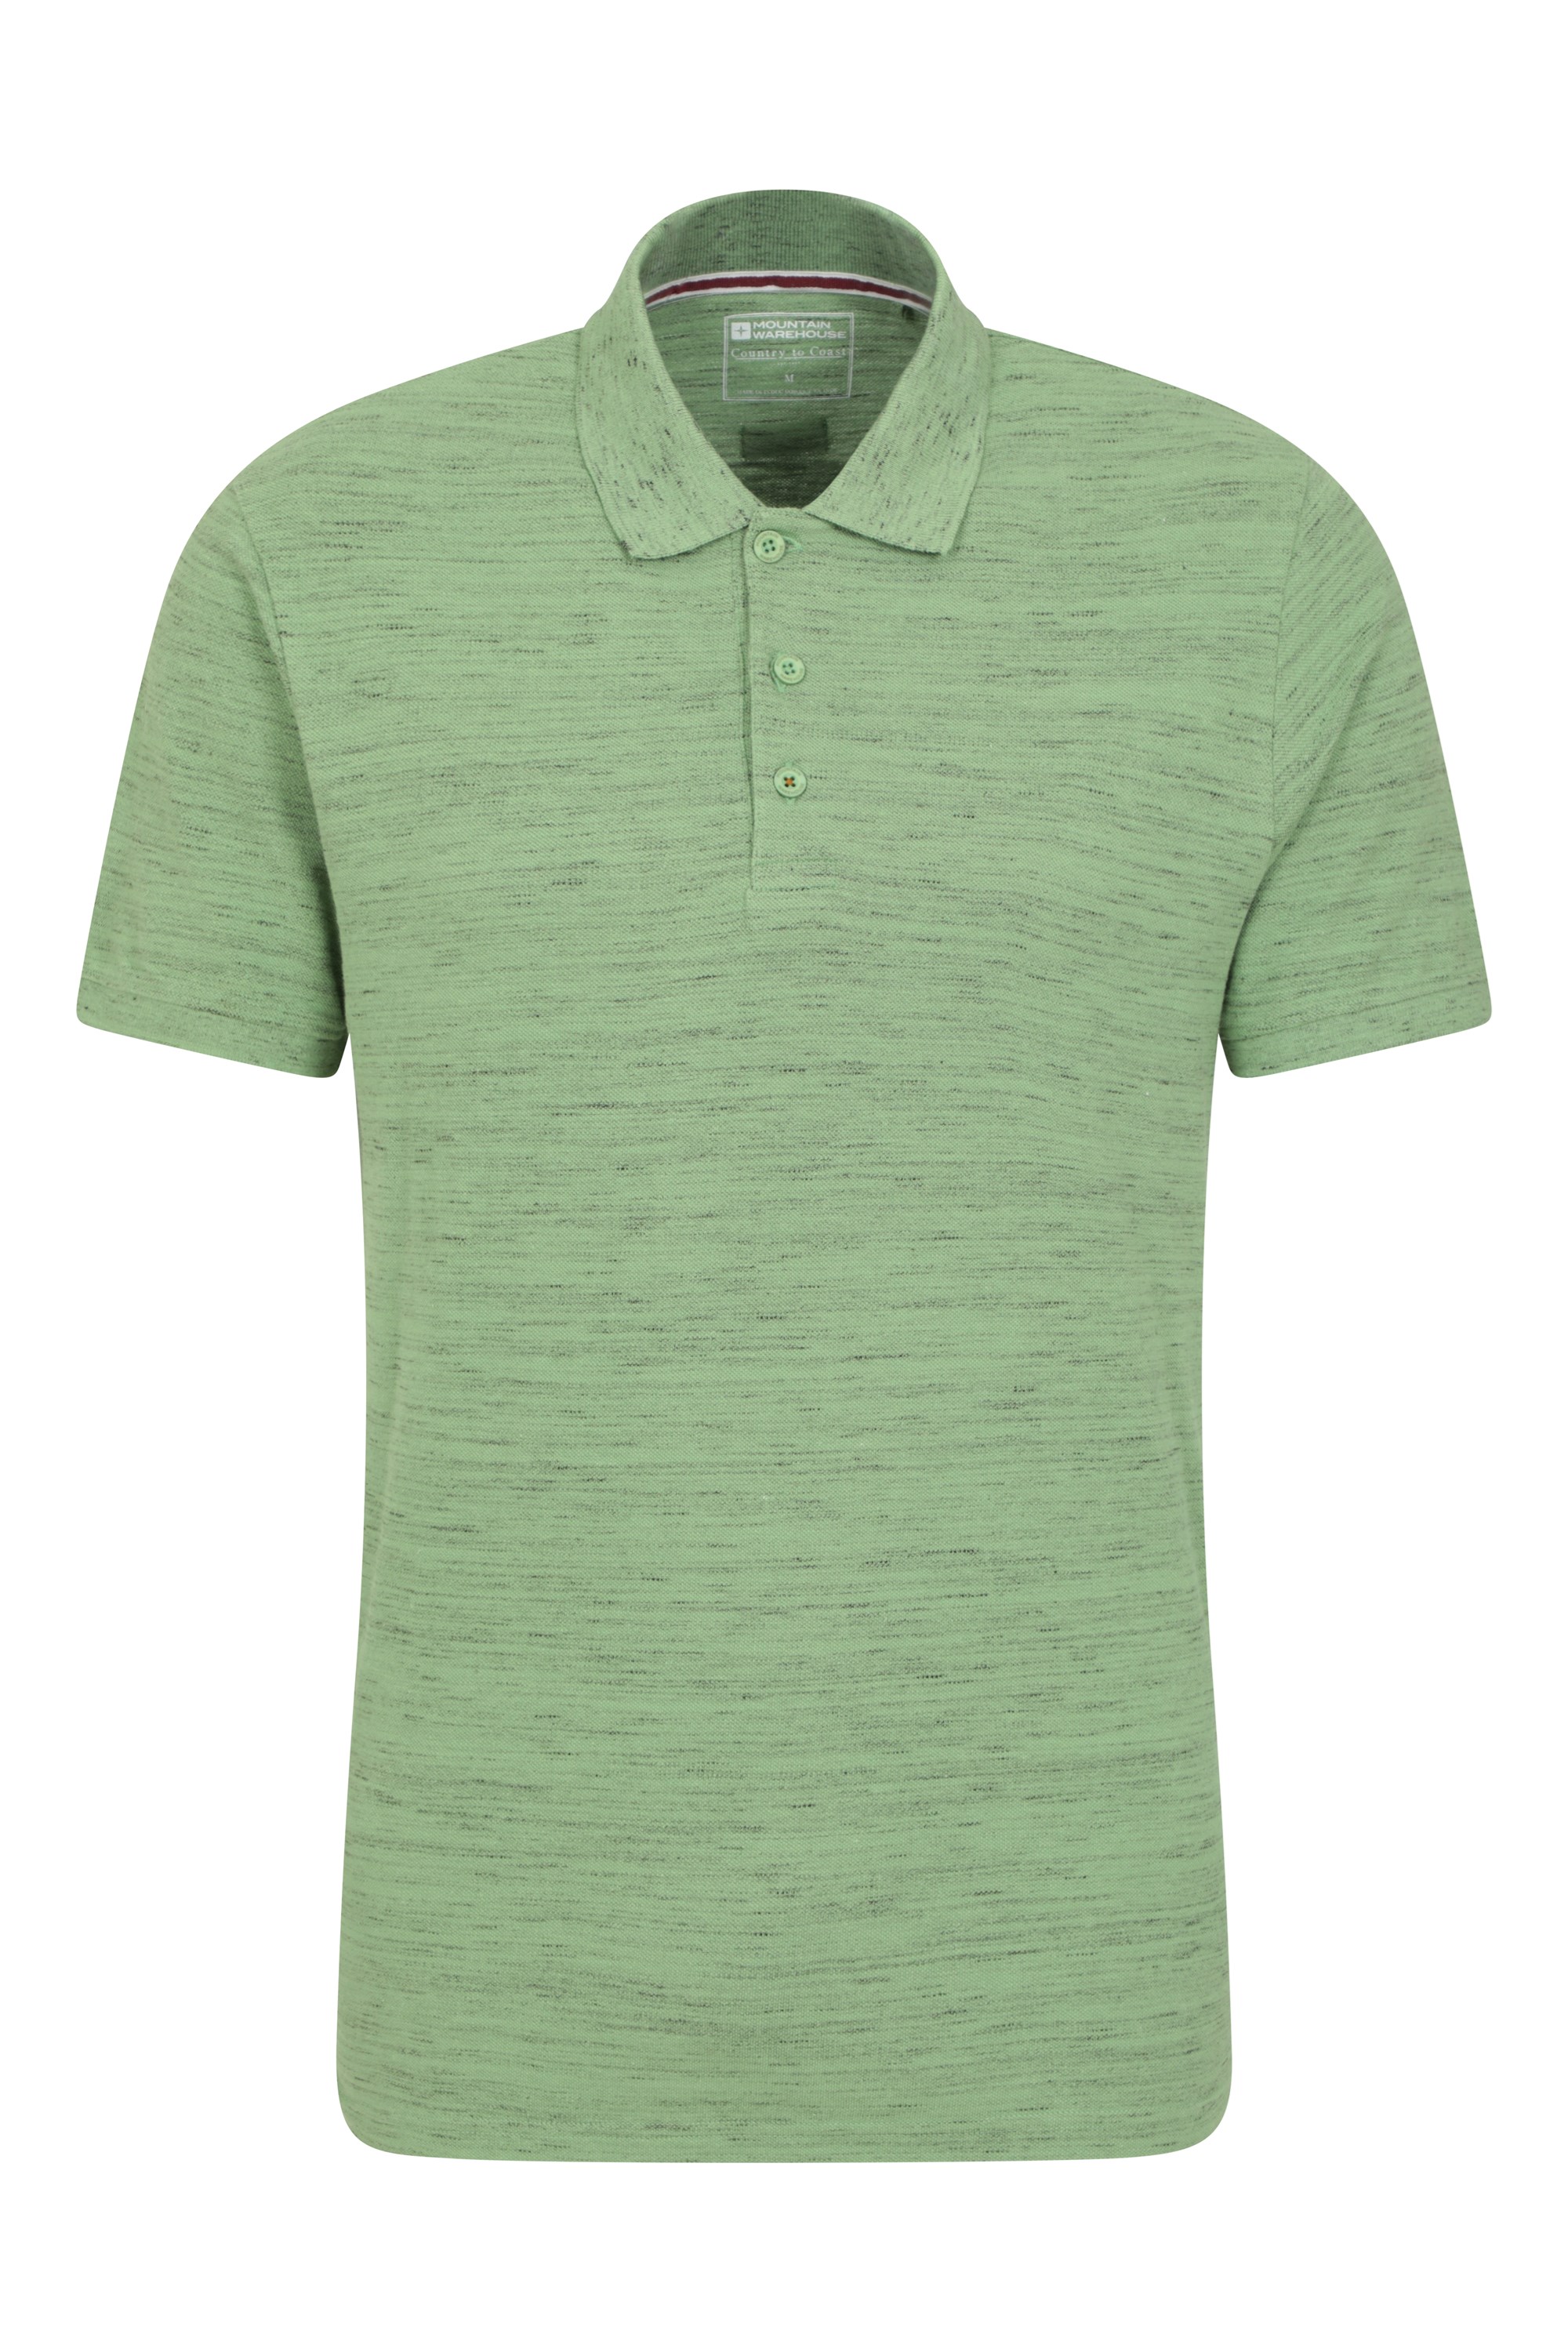 Dawnay Pique Slub Textured Mens Polo Shirt - Green